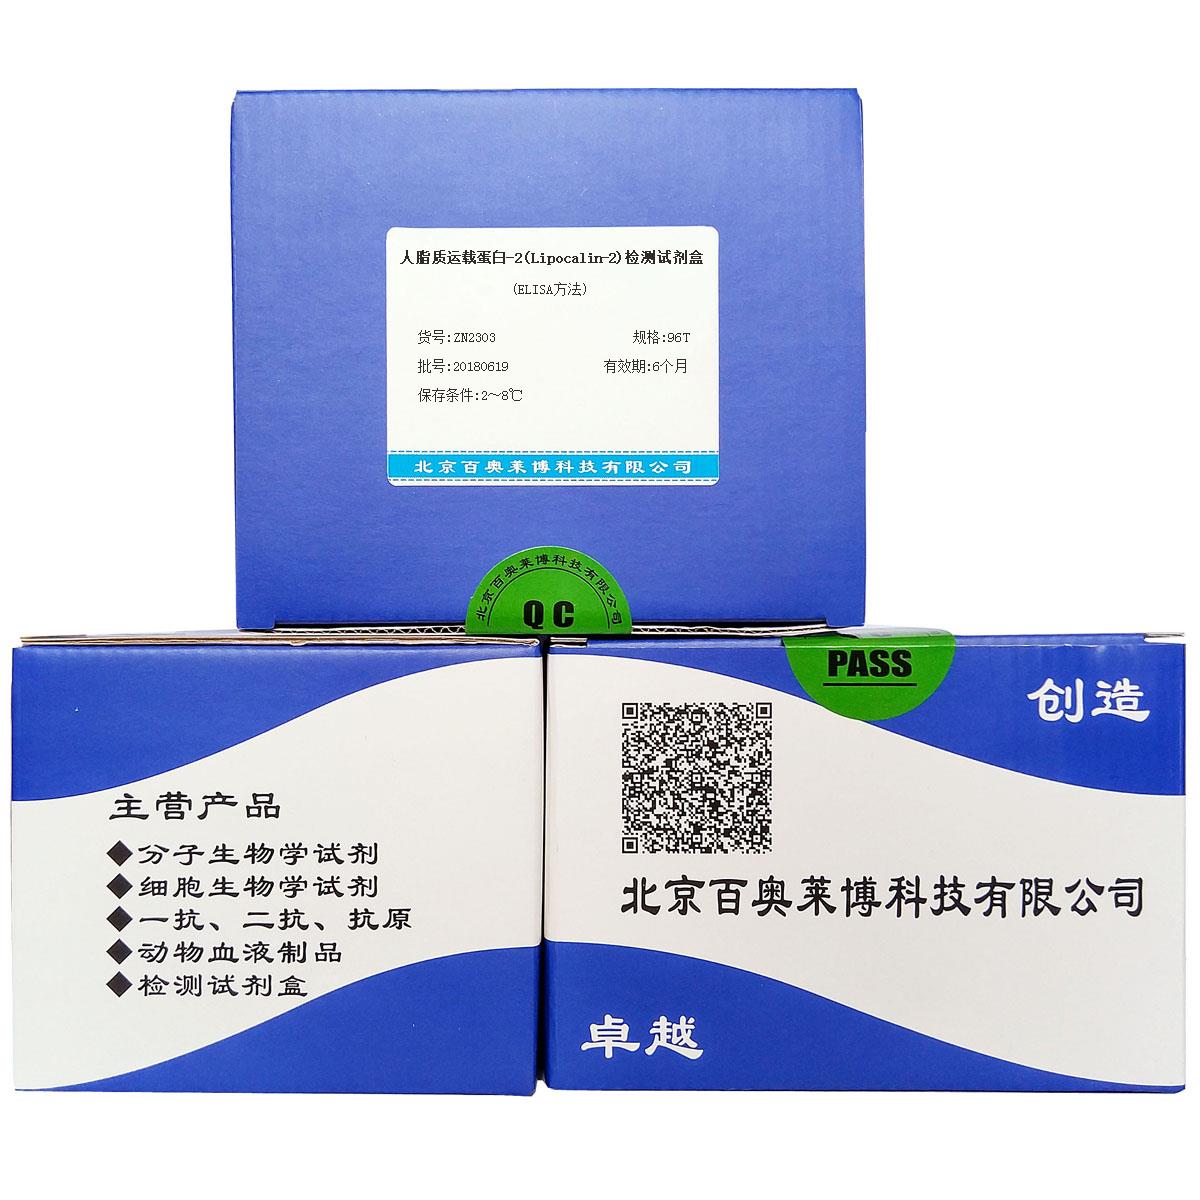 北京现货人脂质运载蛋白-2(Lipocalin-2)检测试剂盒(ELISA方法)销售